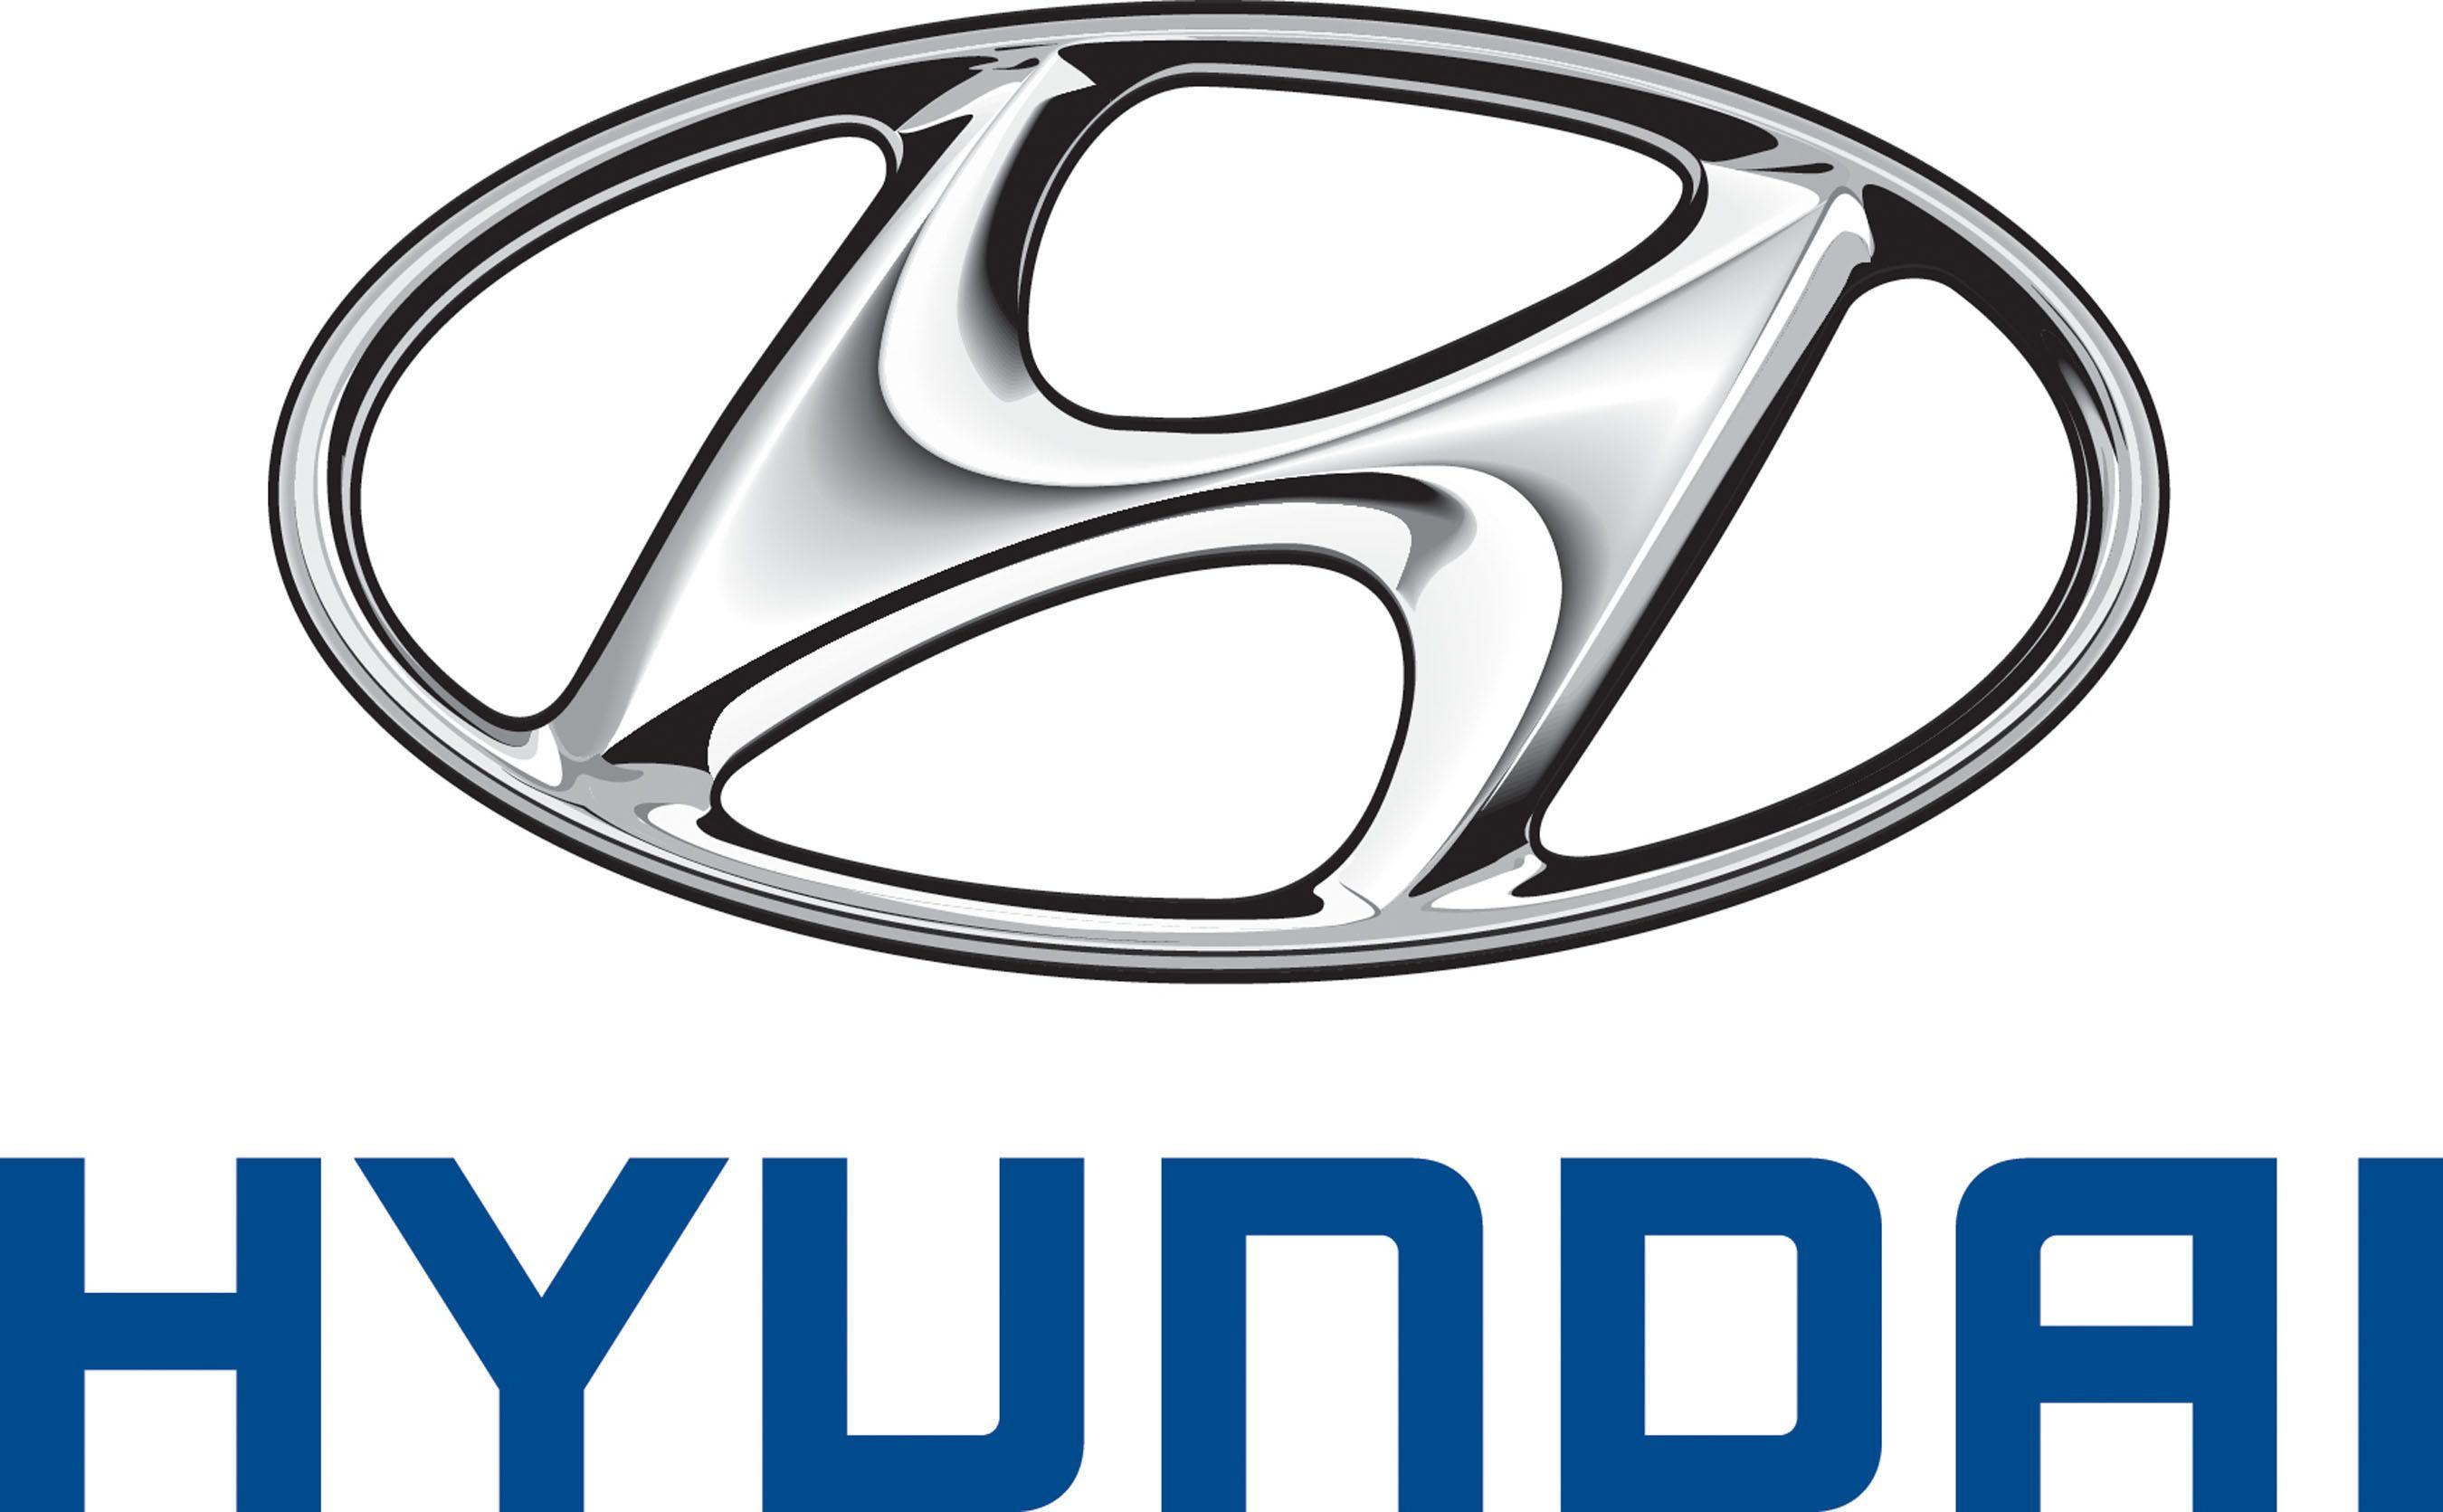 New Hyundai Logo - Hyundai Motor Launches New Global Luxury Brand, 'Genesis'